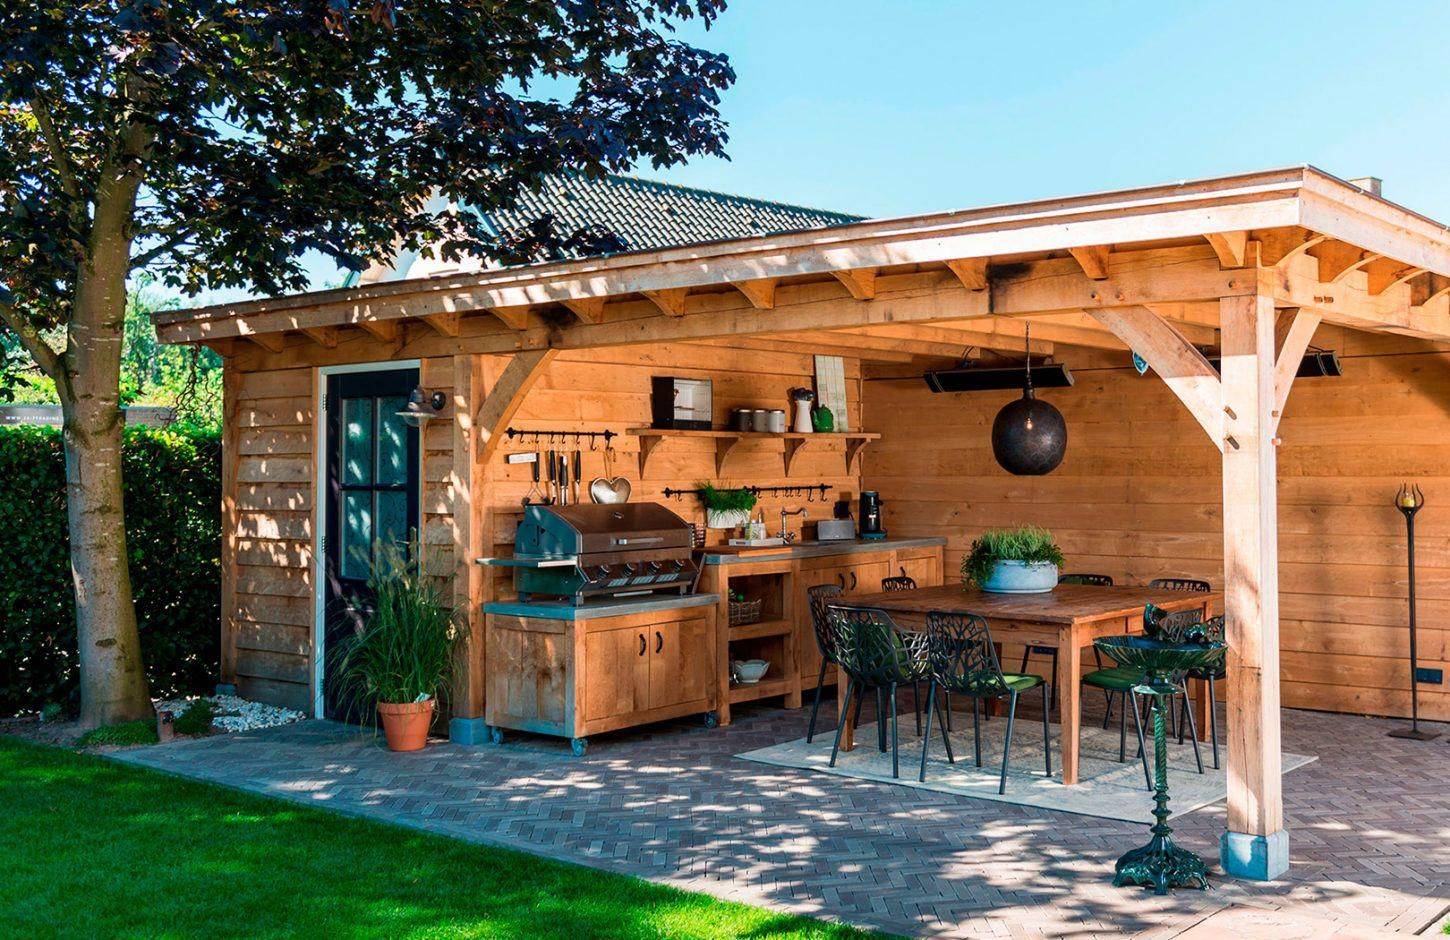 Как обустроить летнюю кухню на даче с барбекю и мангалом дешево своими руками: Фото, проекты очень простых конструкций